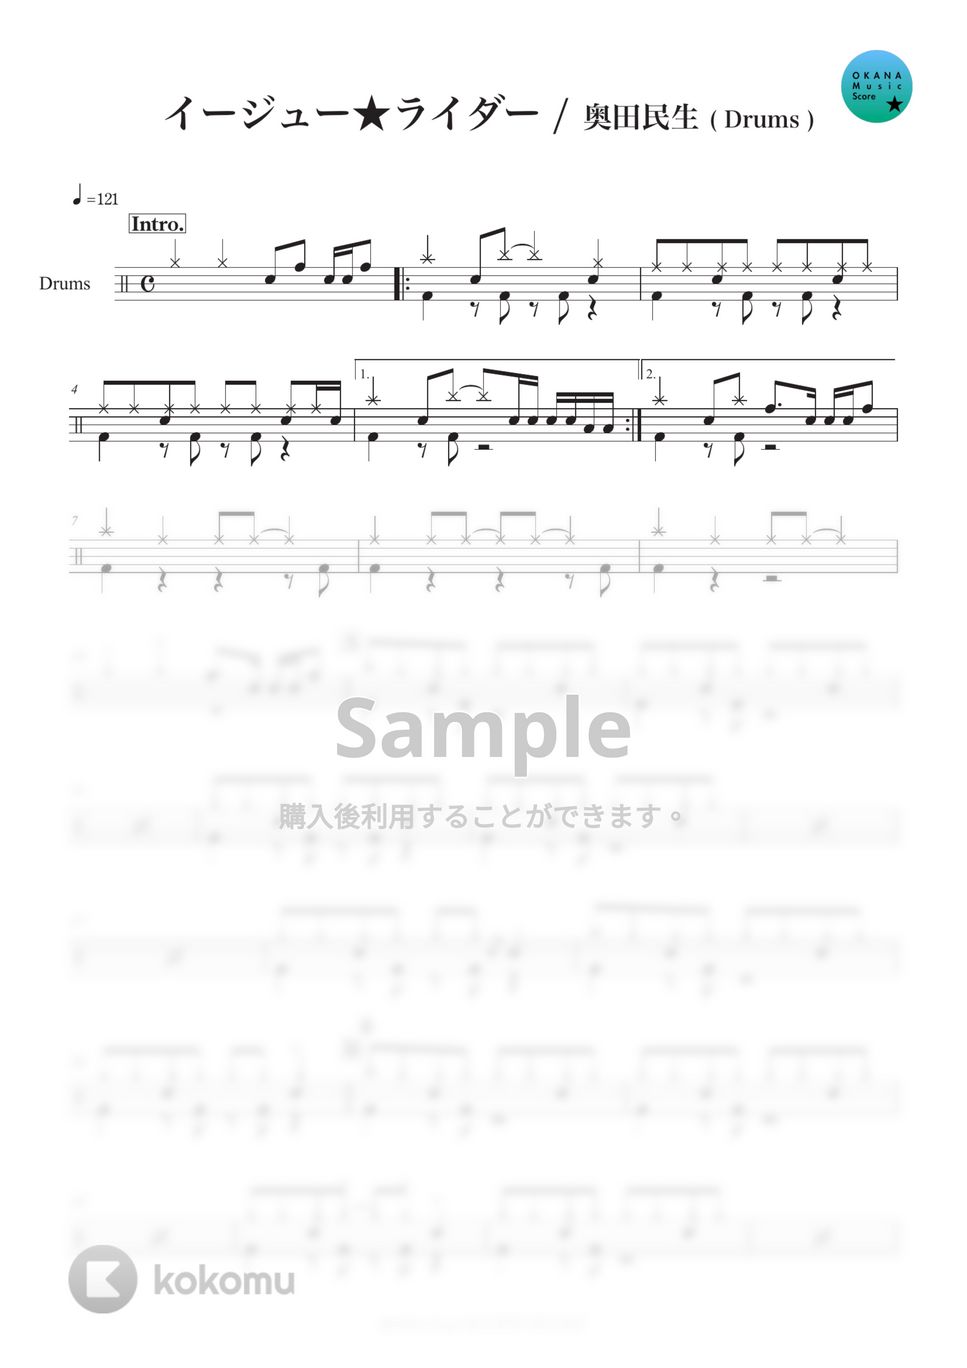 奥田民生 - イージュー★ライダー (ドラム初級) by OKANA